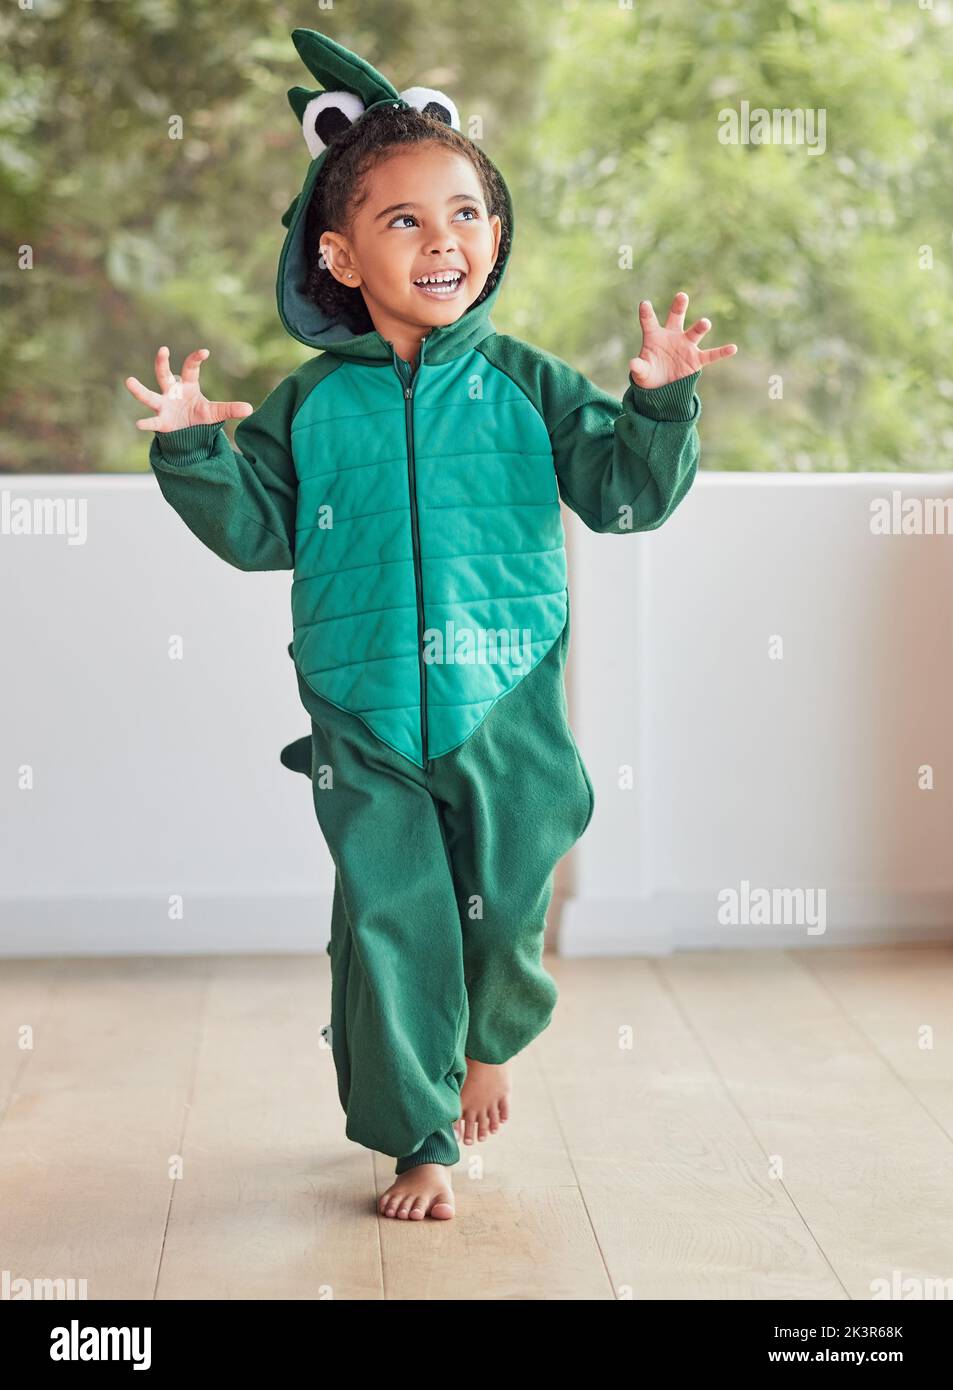 Kind, Lächeln und aufgeregt in halloween Dinosaurier Kostüm zu Hause spielen Rolle und Spaß auf der Party. Glückliches Kind, das mit Fantasy-Charakter verspielt ist Stockfoto